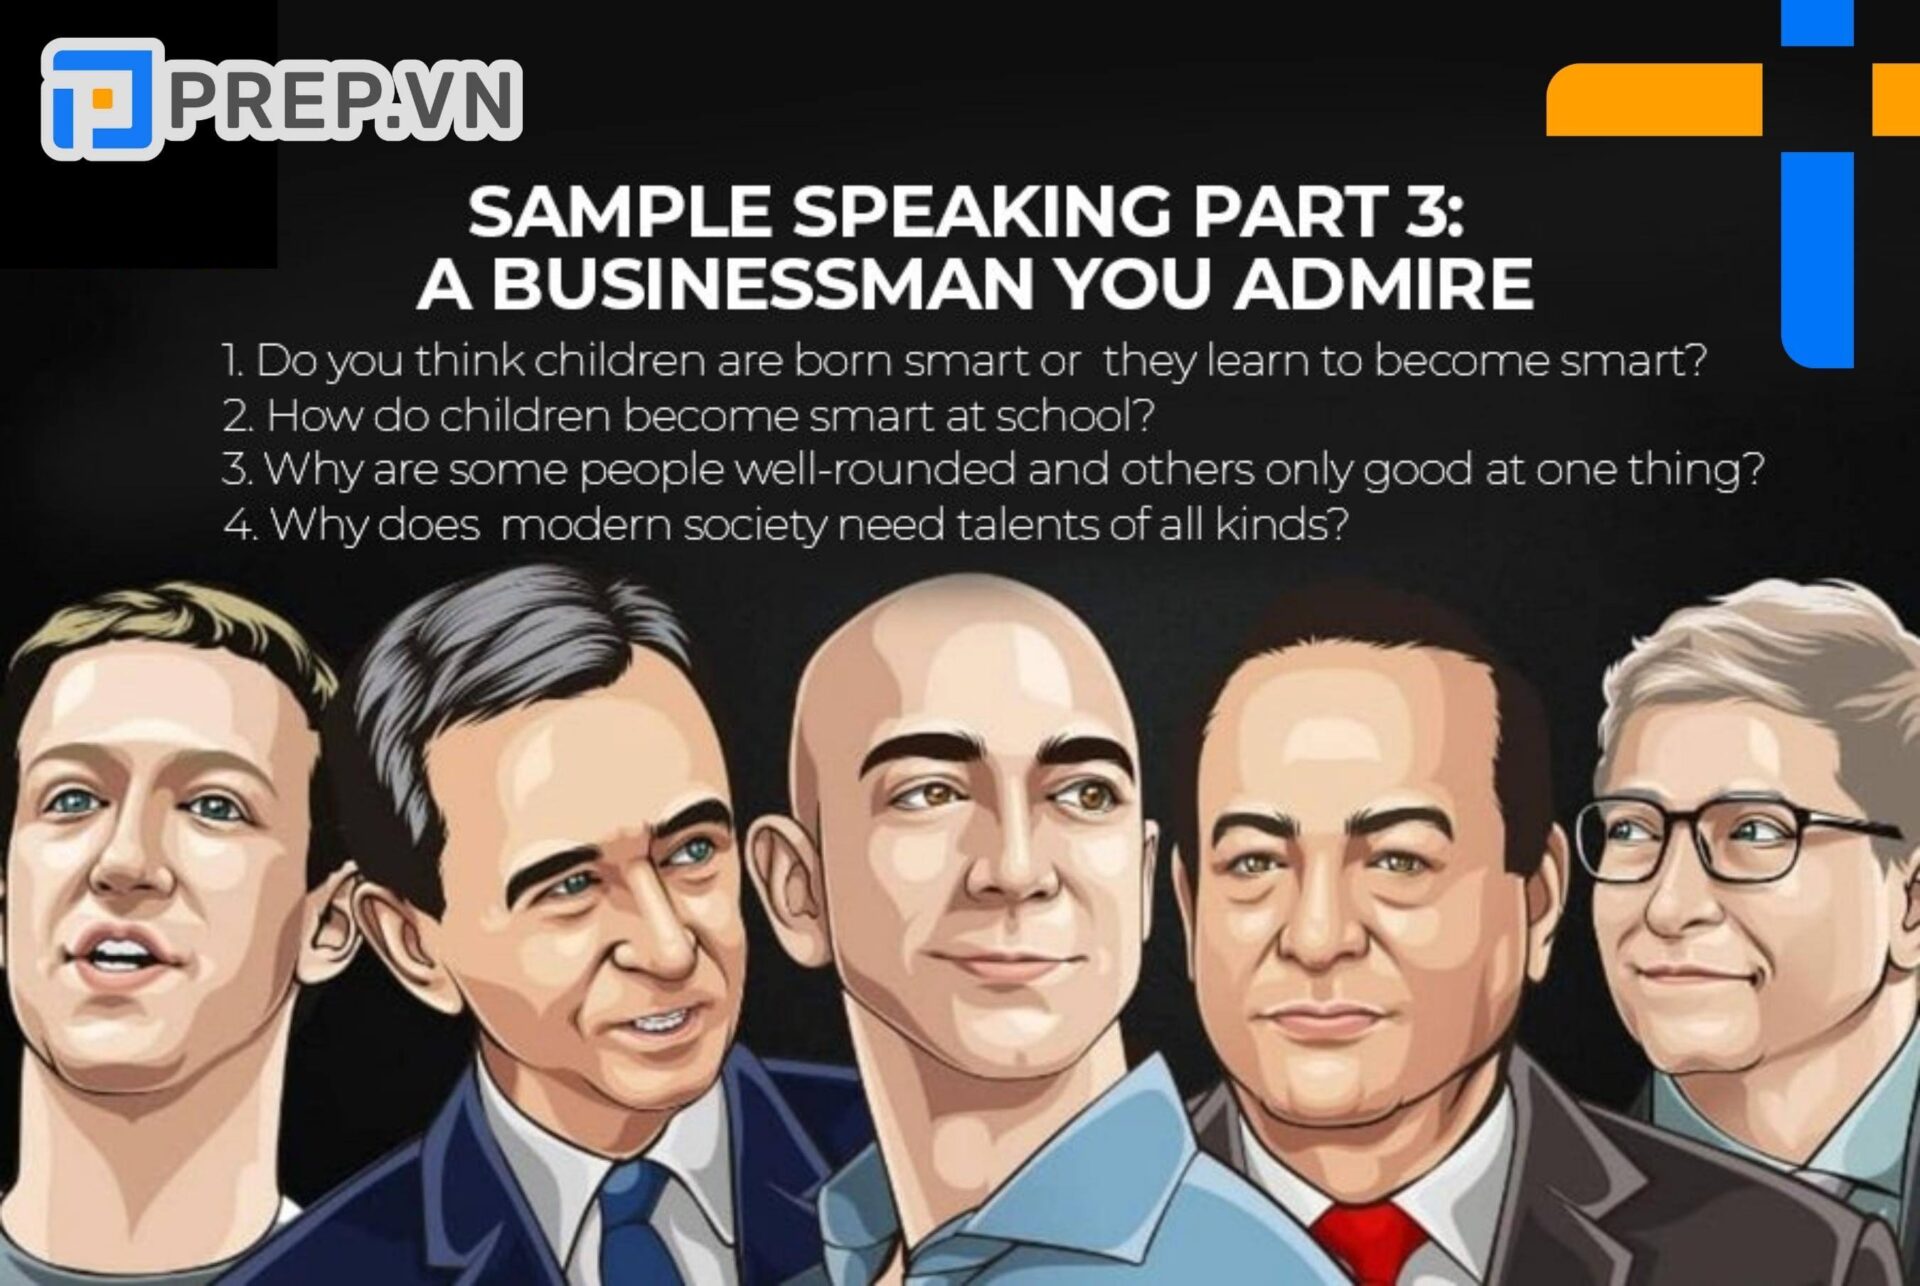 Bài mẫu Speaking Part 3 chủ đề “Describe a businessman you admire”